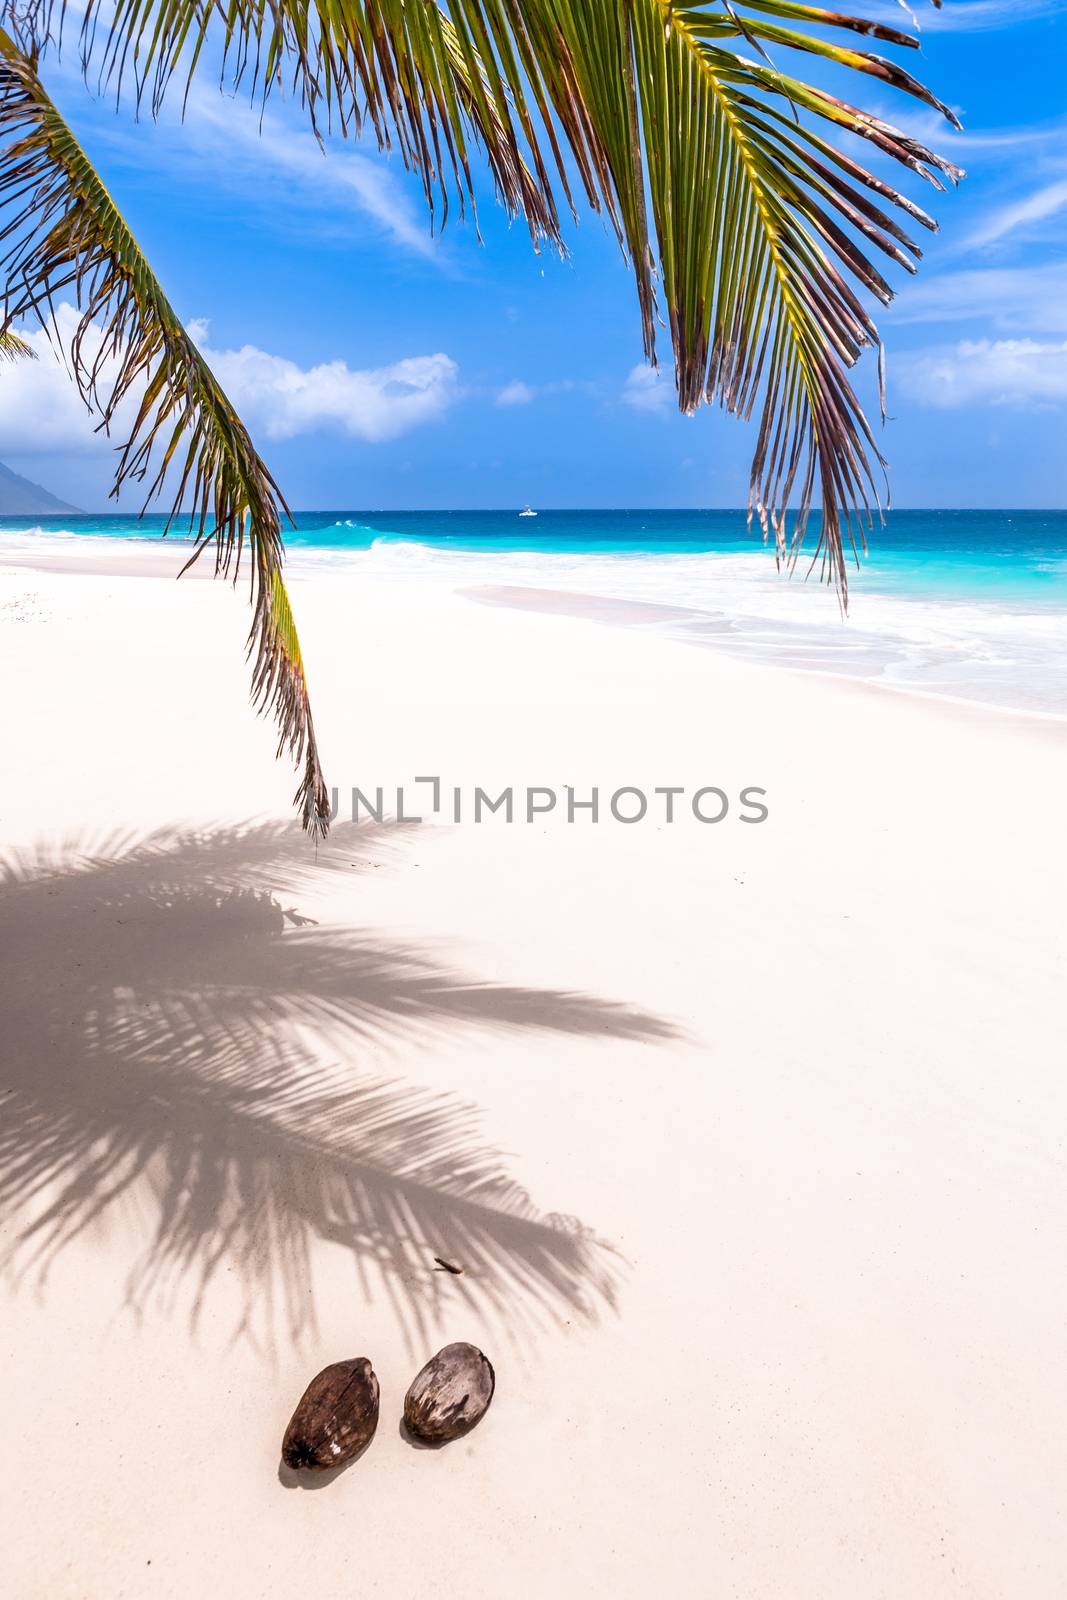 Seychelles, Paradise beach. La Digue at Anse Lazio, Source d’Argent